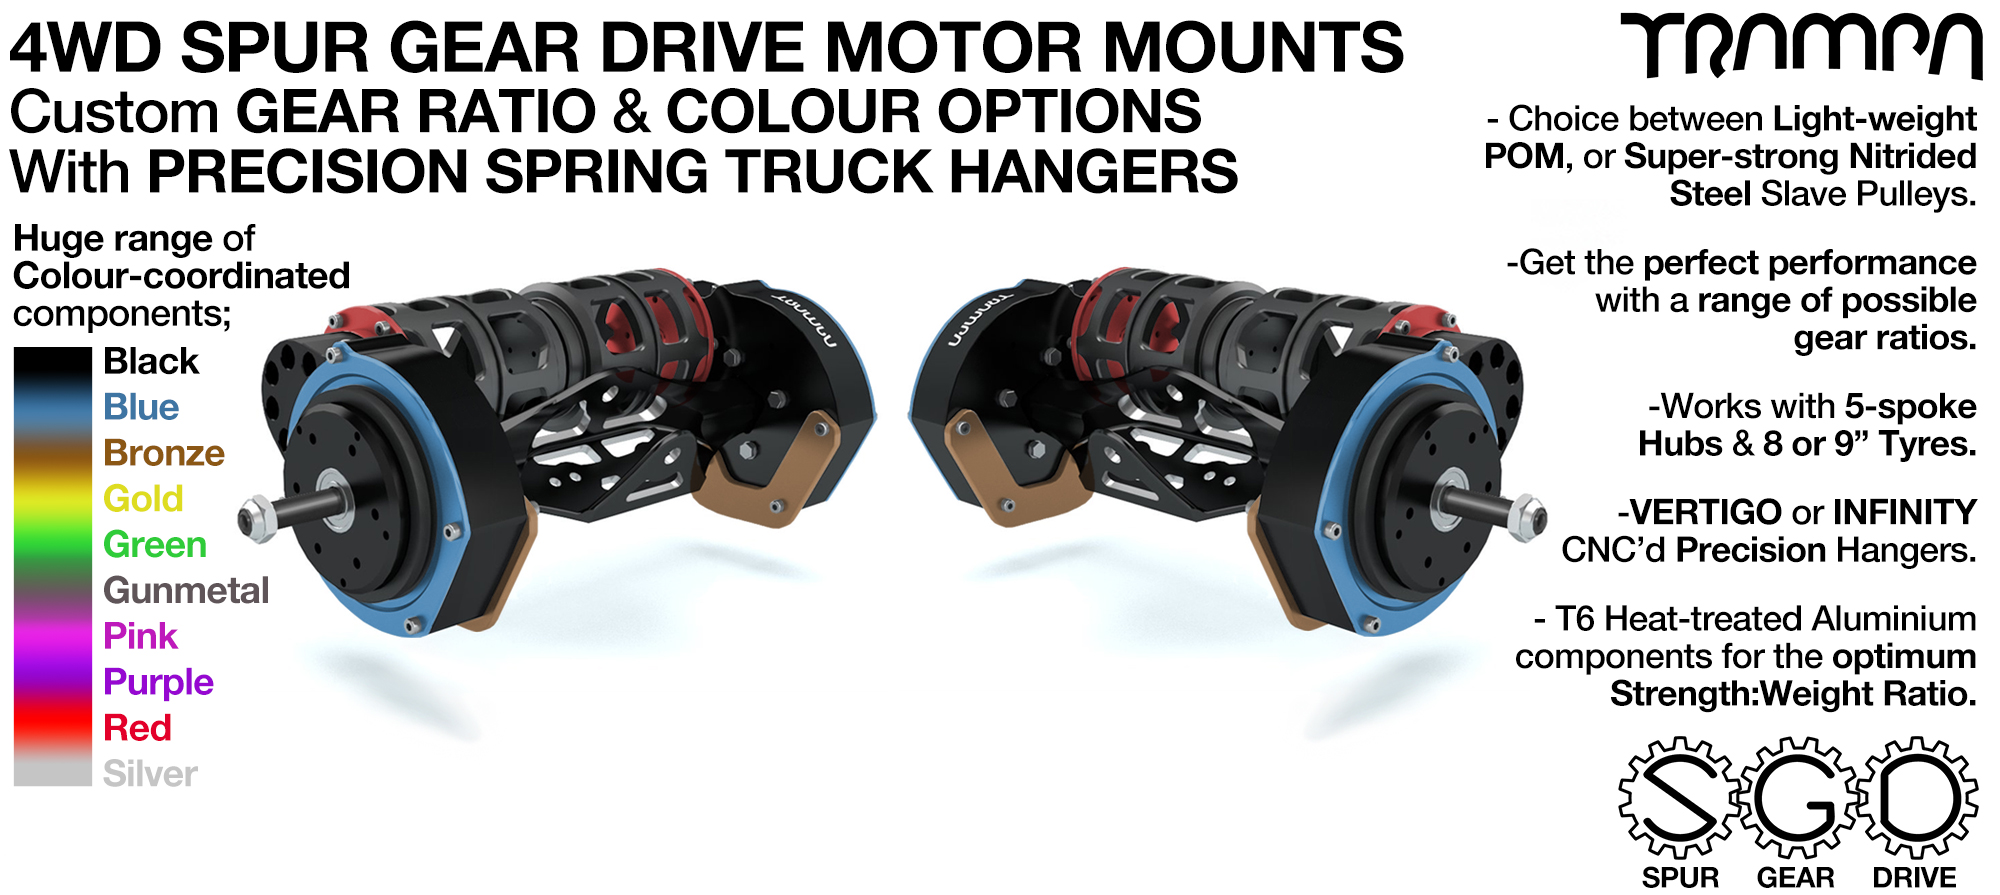 4WD Mountainboard Spur Gear Drive Motor Mounts & Hangers